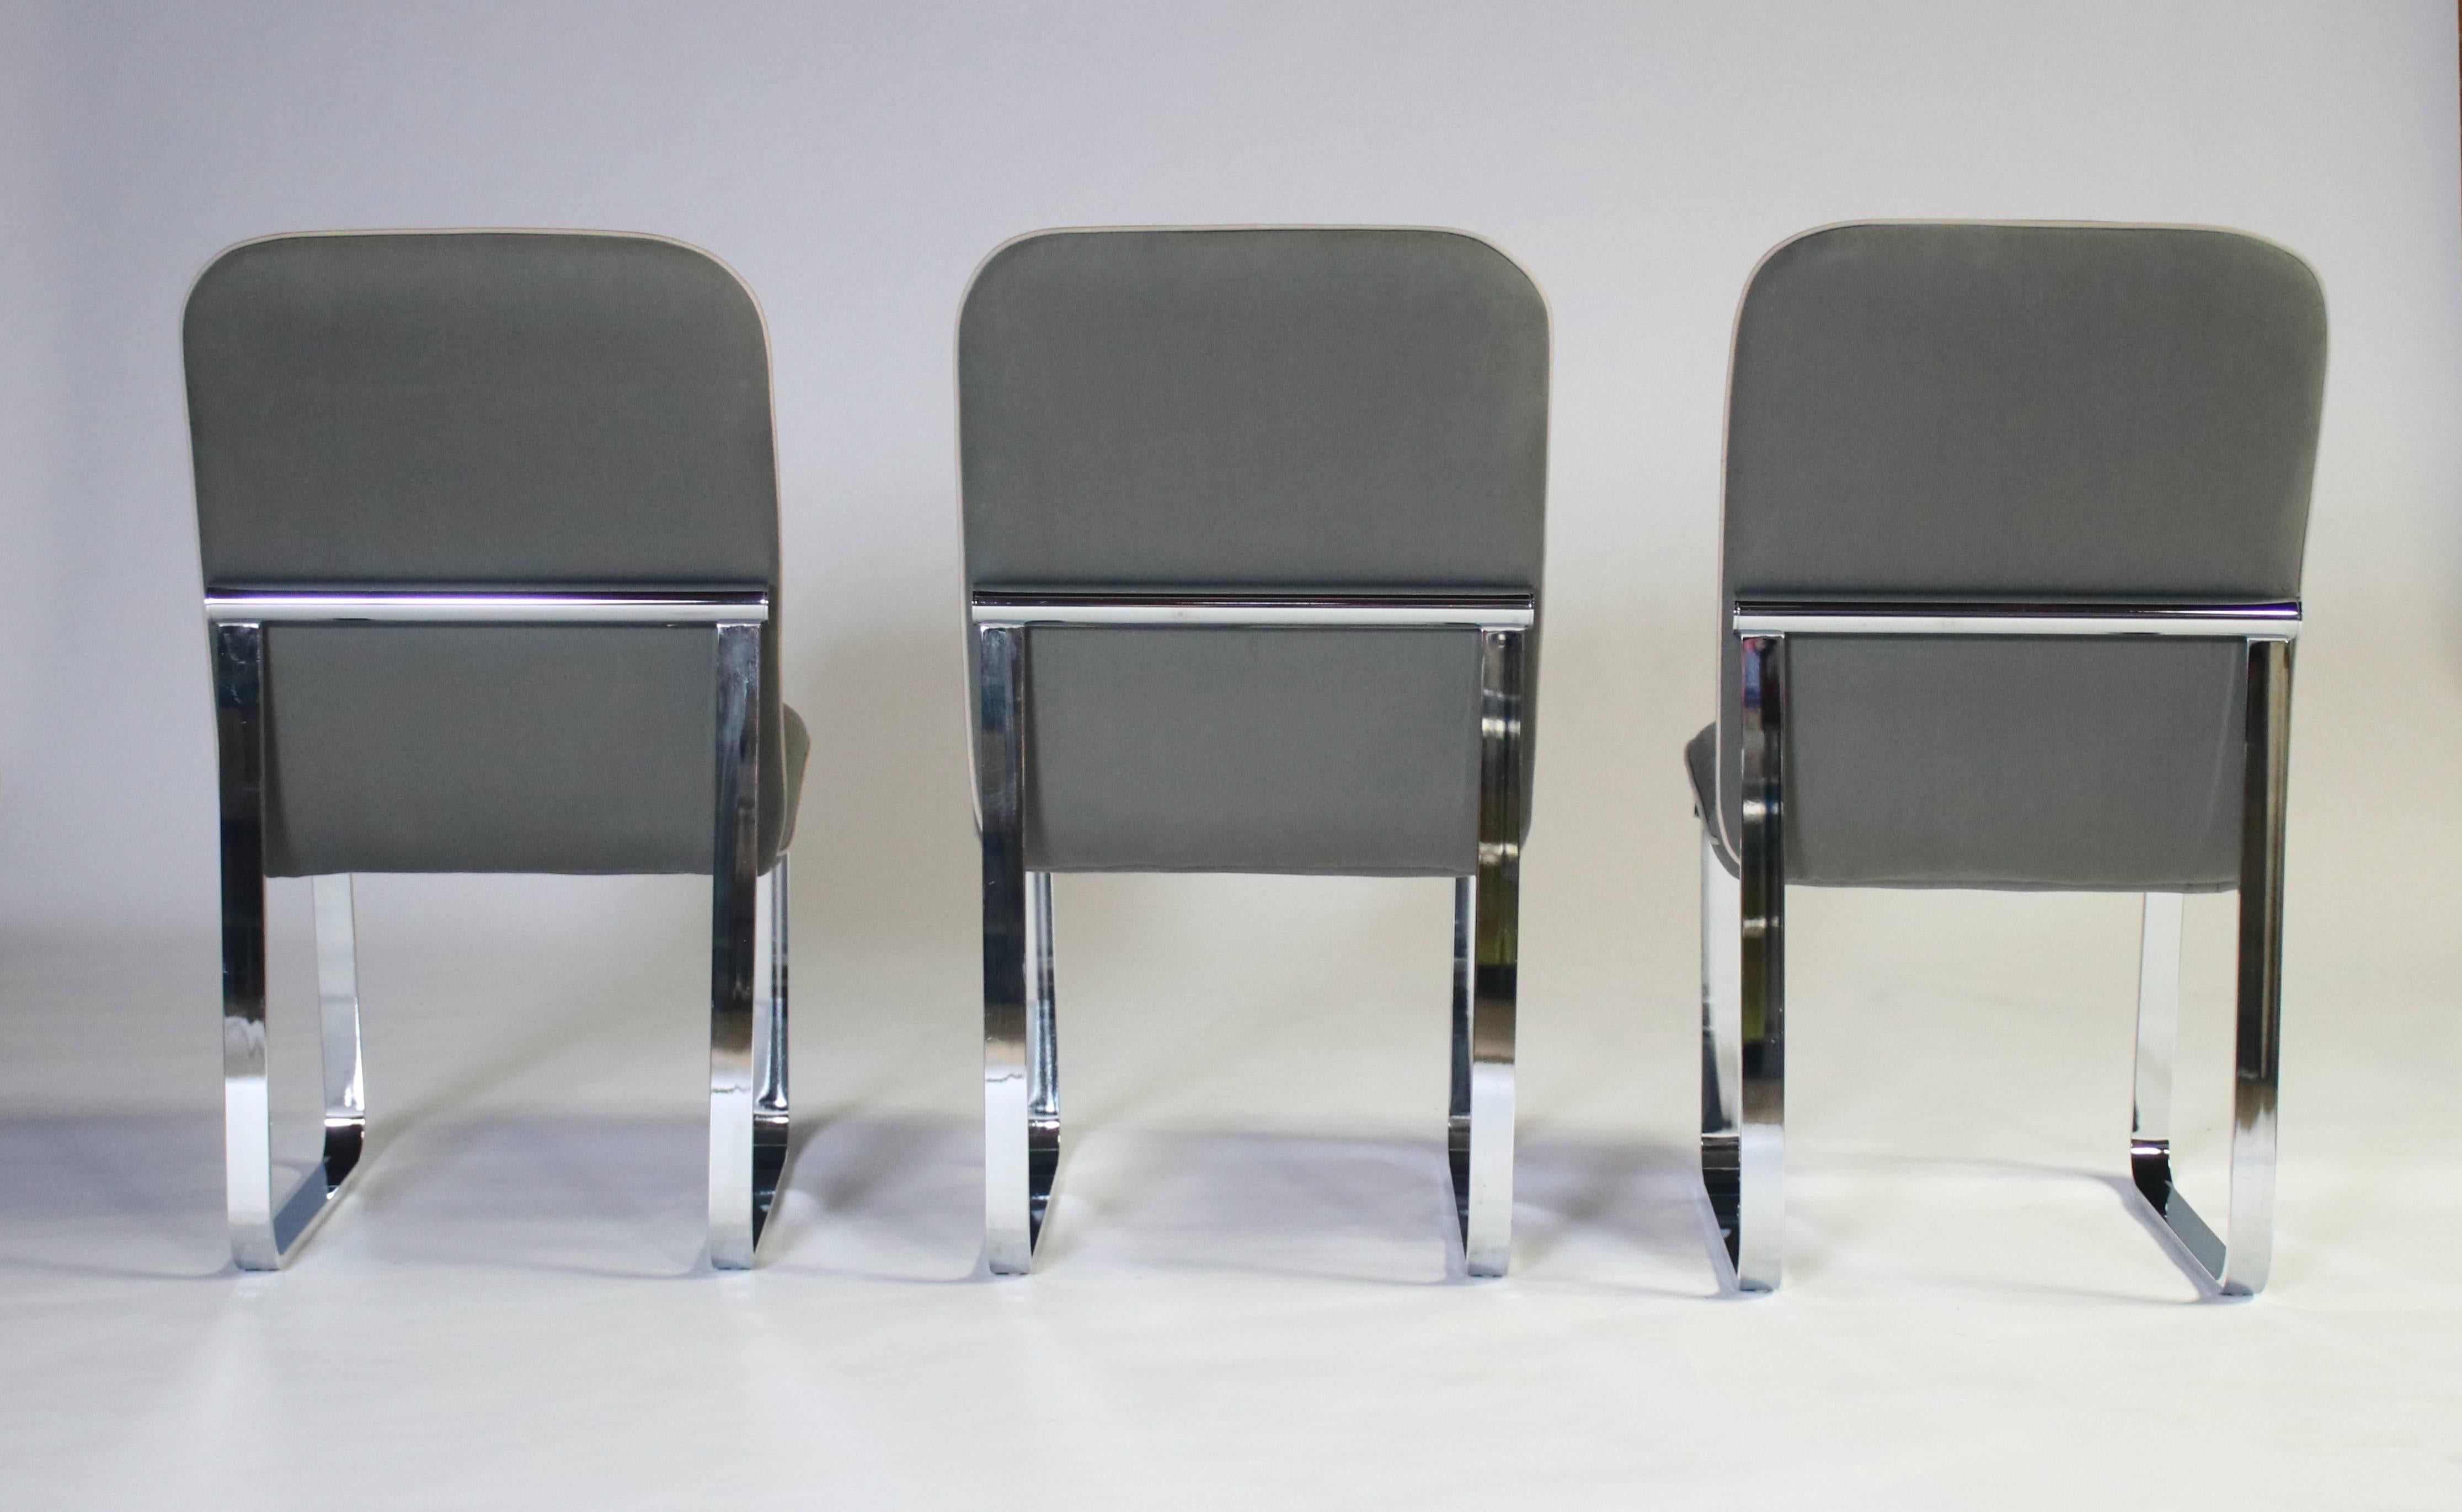 Trois chaises de salle à manger des années 1970 par Design Institute of America sur de lourds cadres chromés. Excellent état et tapisserie récente. Une des chaises présente une légère décoloration du tissu. Revêtement en coton gris avec passepoil